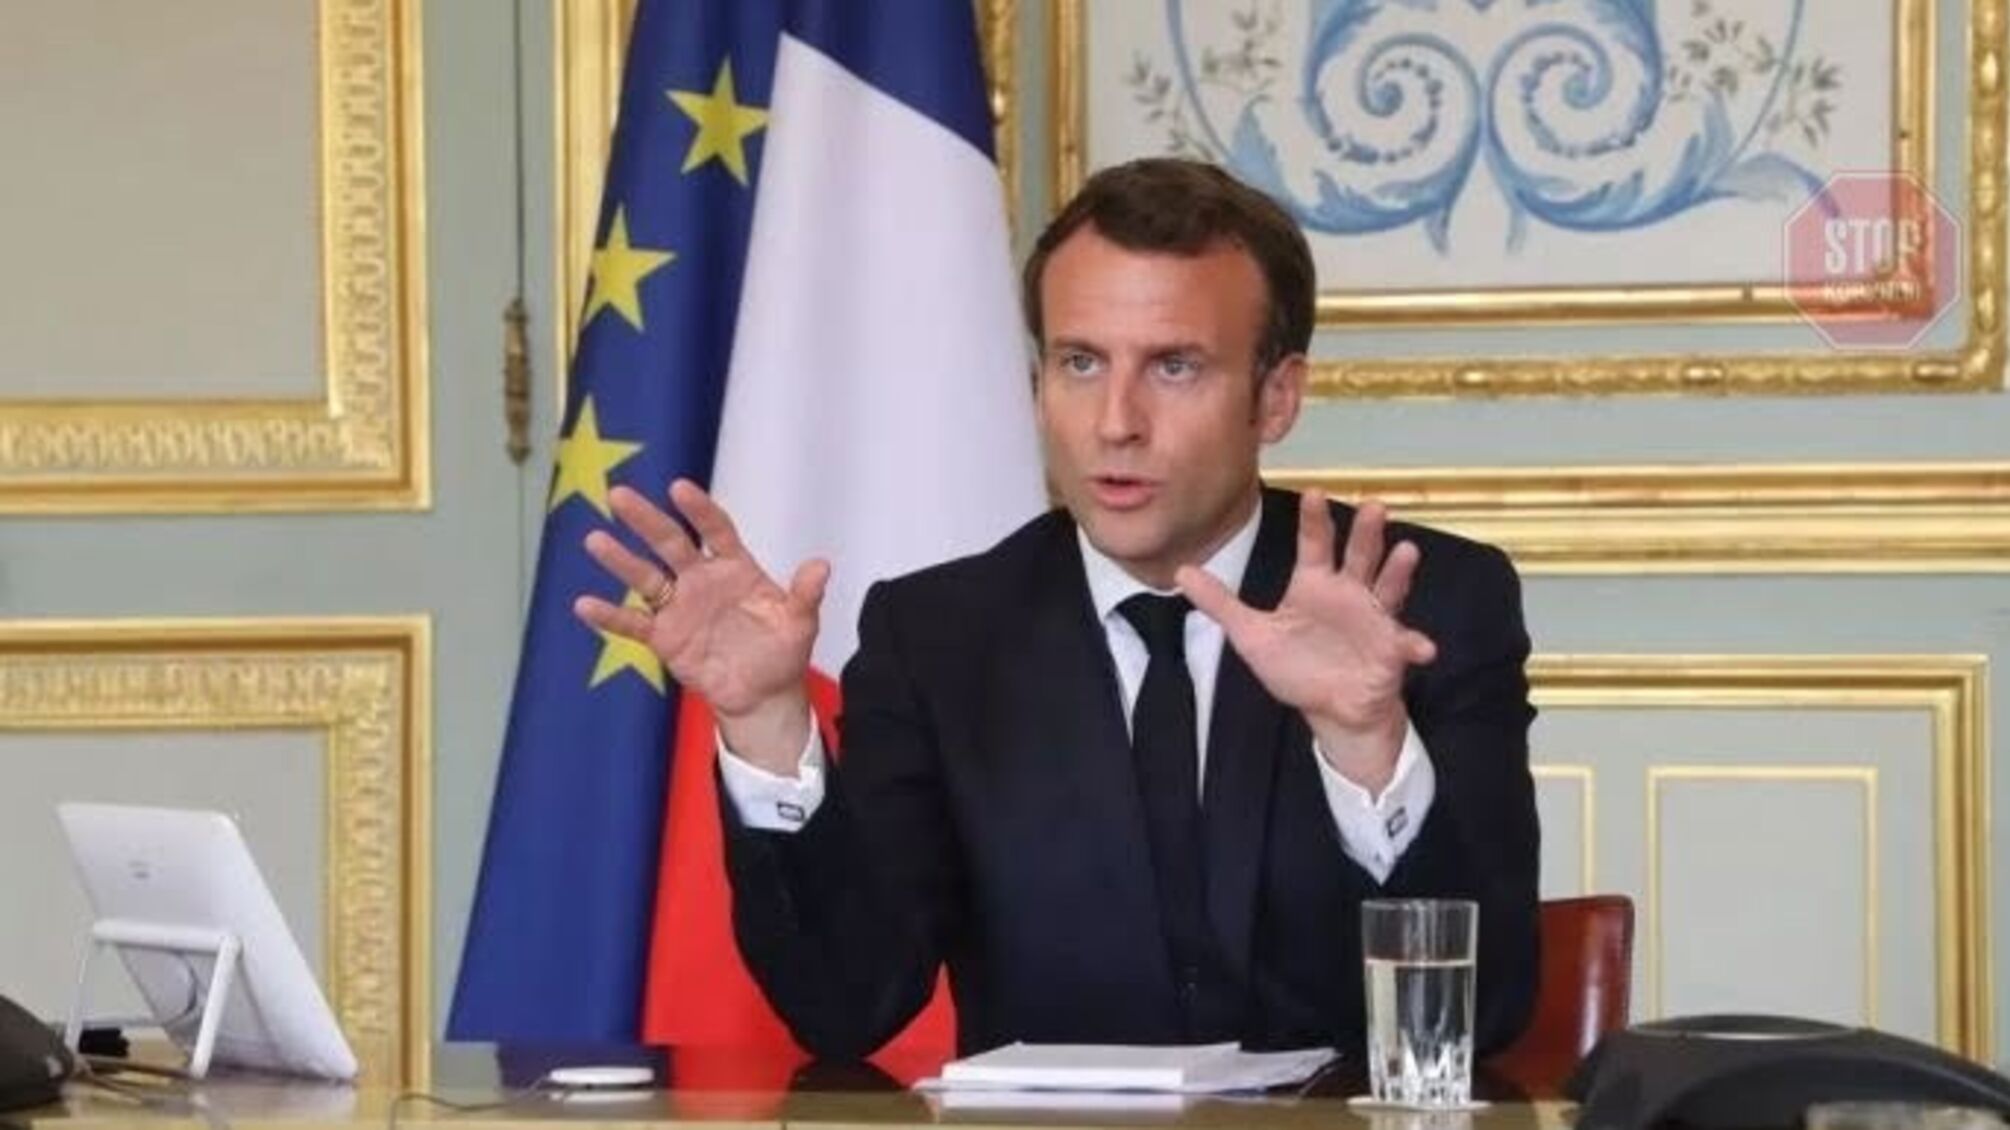 “Ісламісти спати спокійно не будуть”: президент Франції повідомив про посилення безпеки в країні 